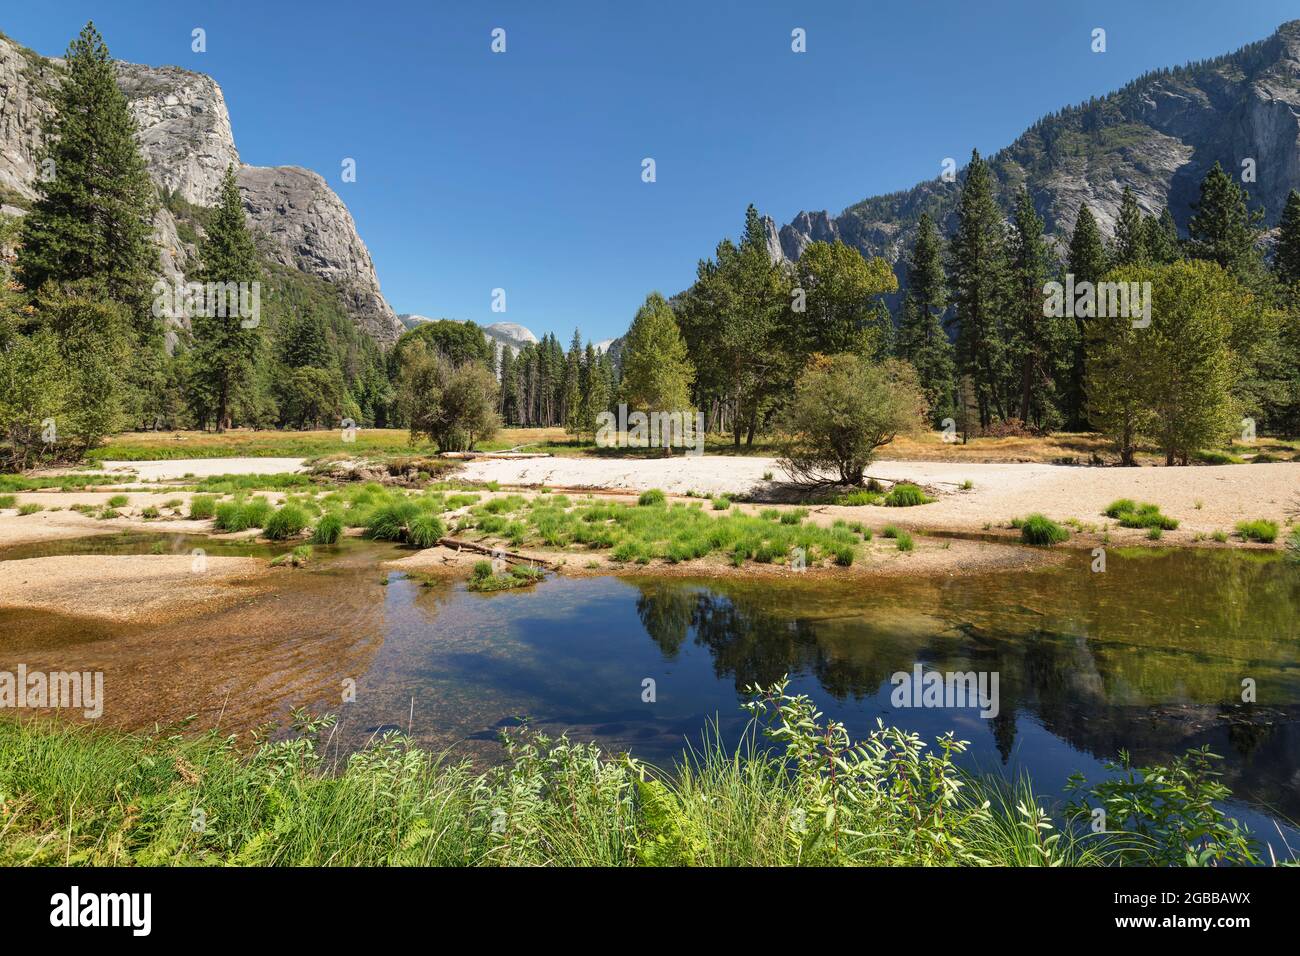 Merced River in Yosemite Valley, parc national de Yosemite, site classé au patrimoine mondial de l'UNESCO, Californie, États-Unis d'Amérique, Amérique du Nord Banque D'Images